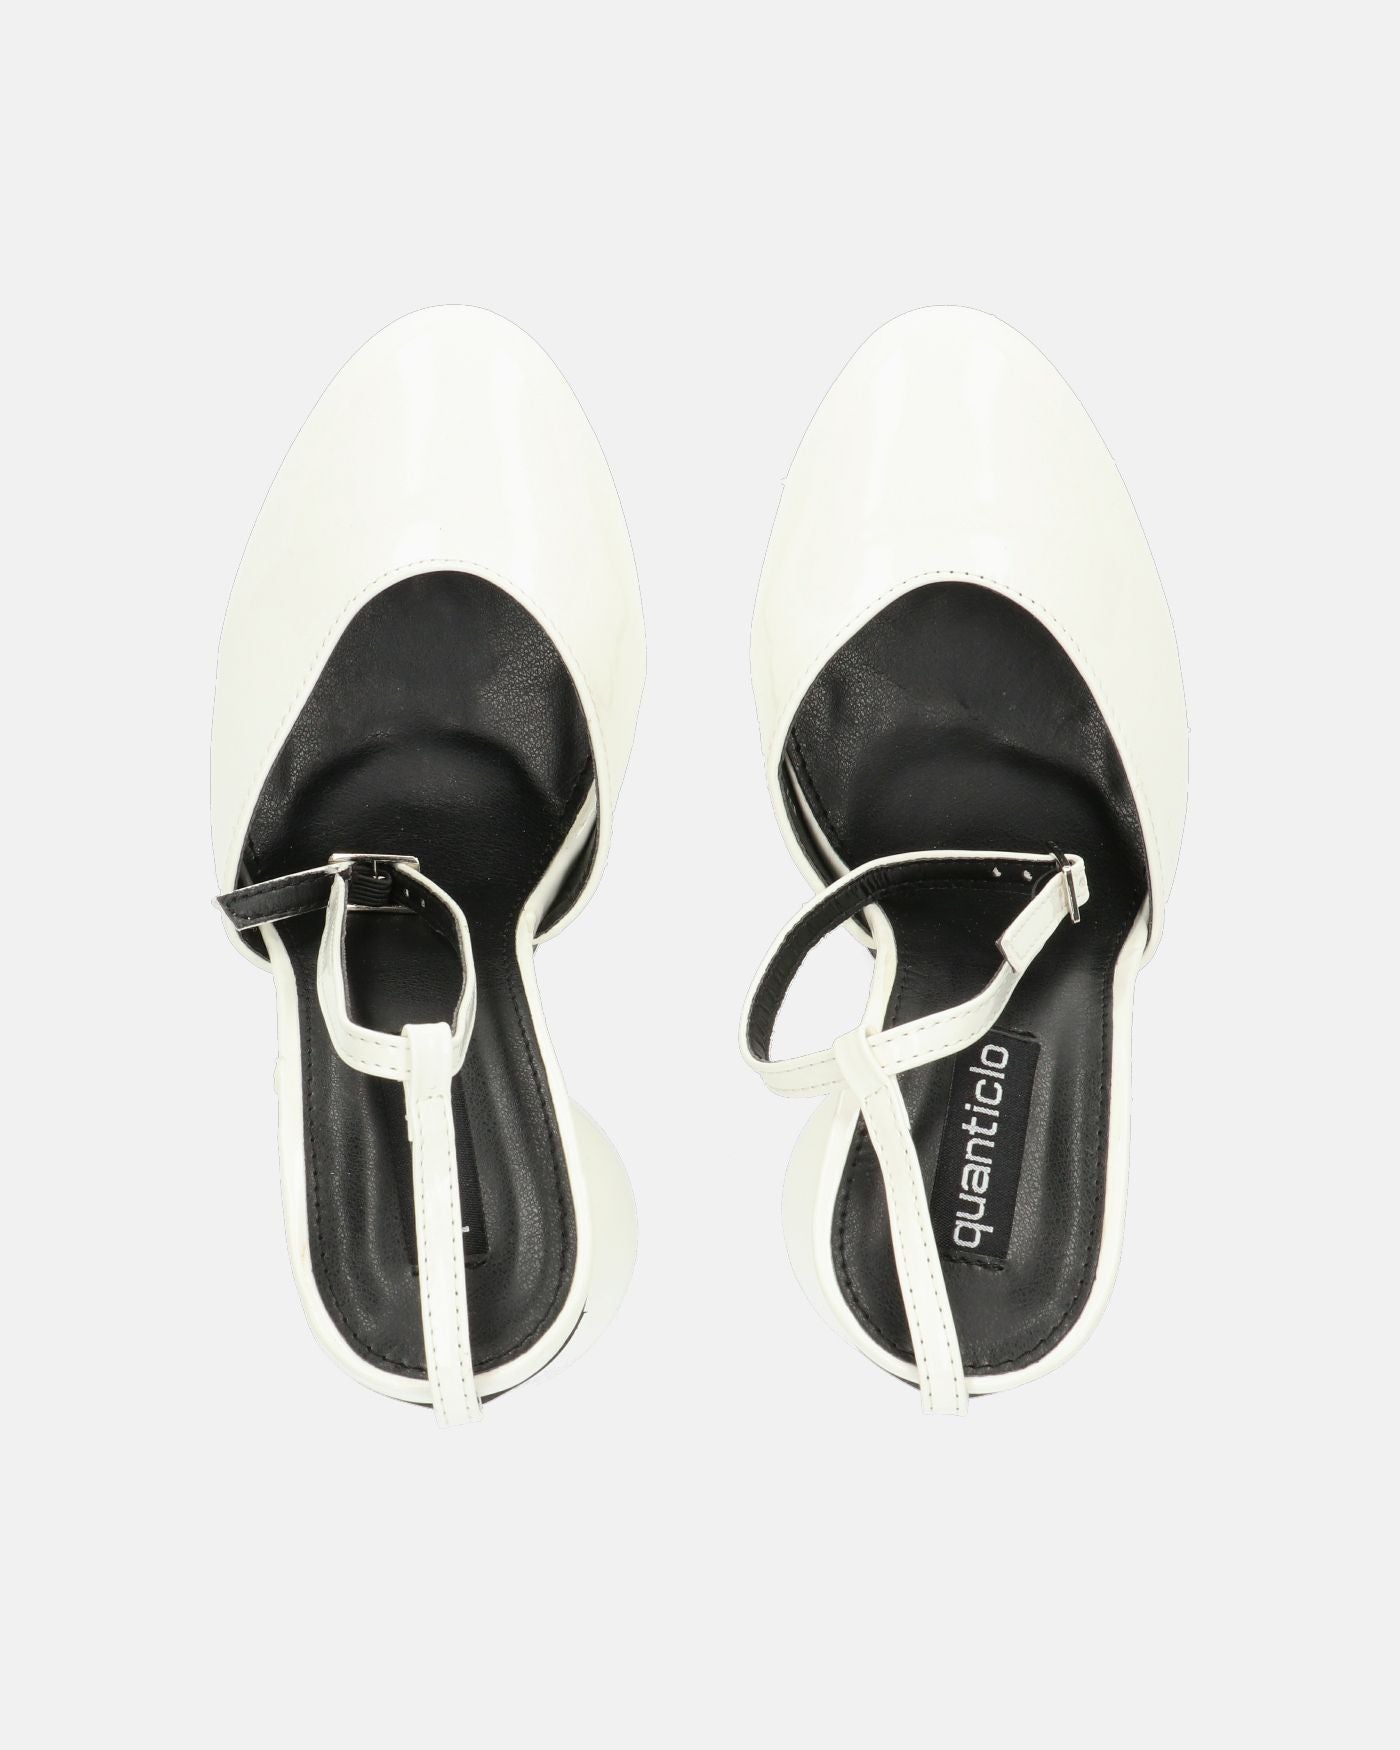 MAYBELLE - sandali in glassy bianco con tacco cilindrico